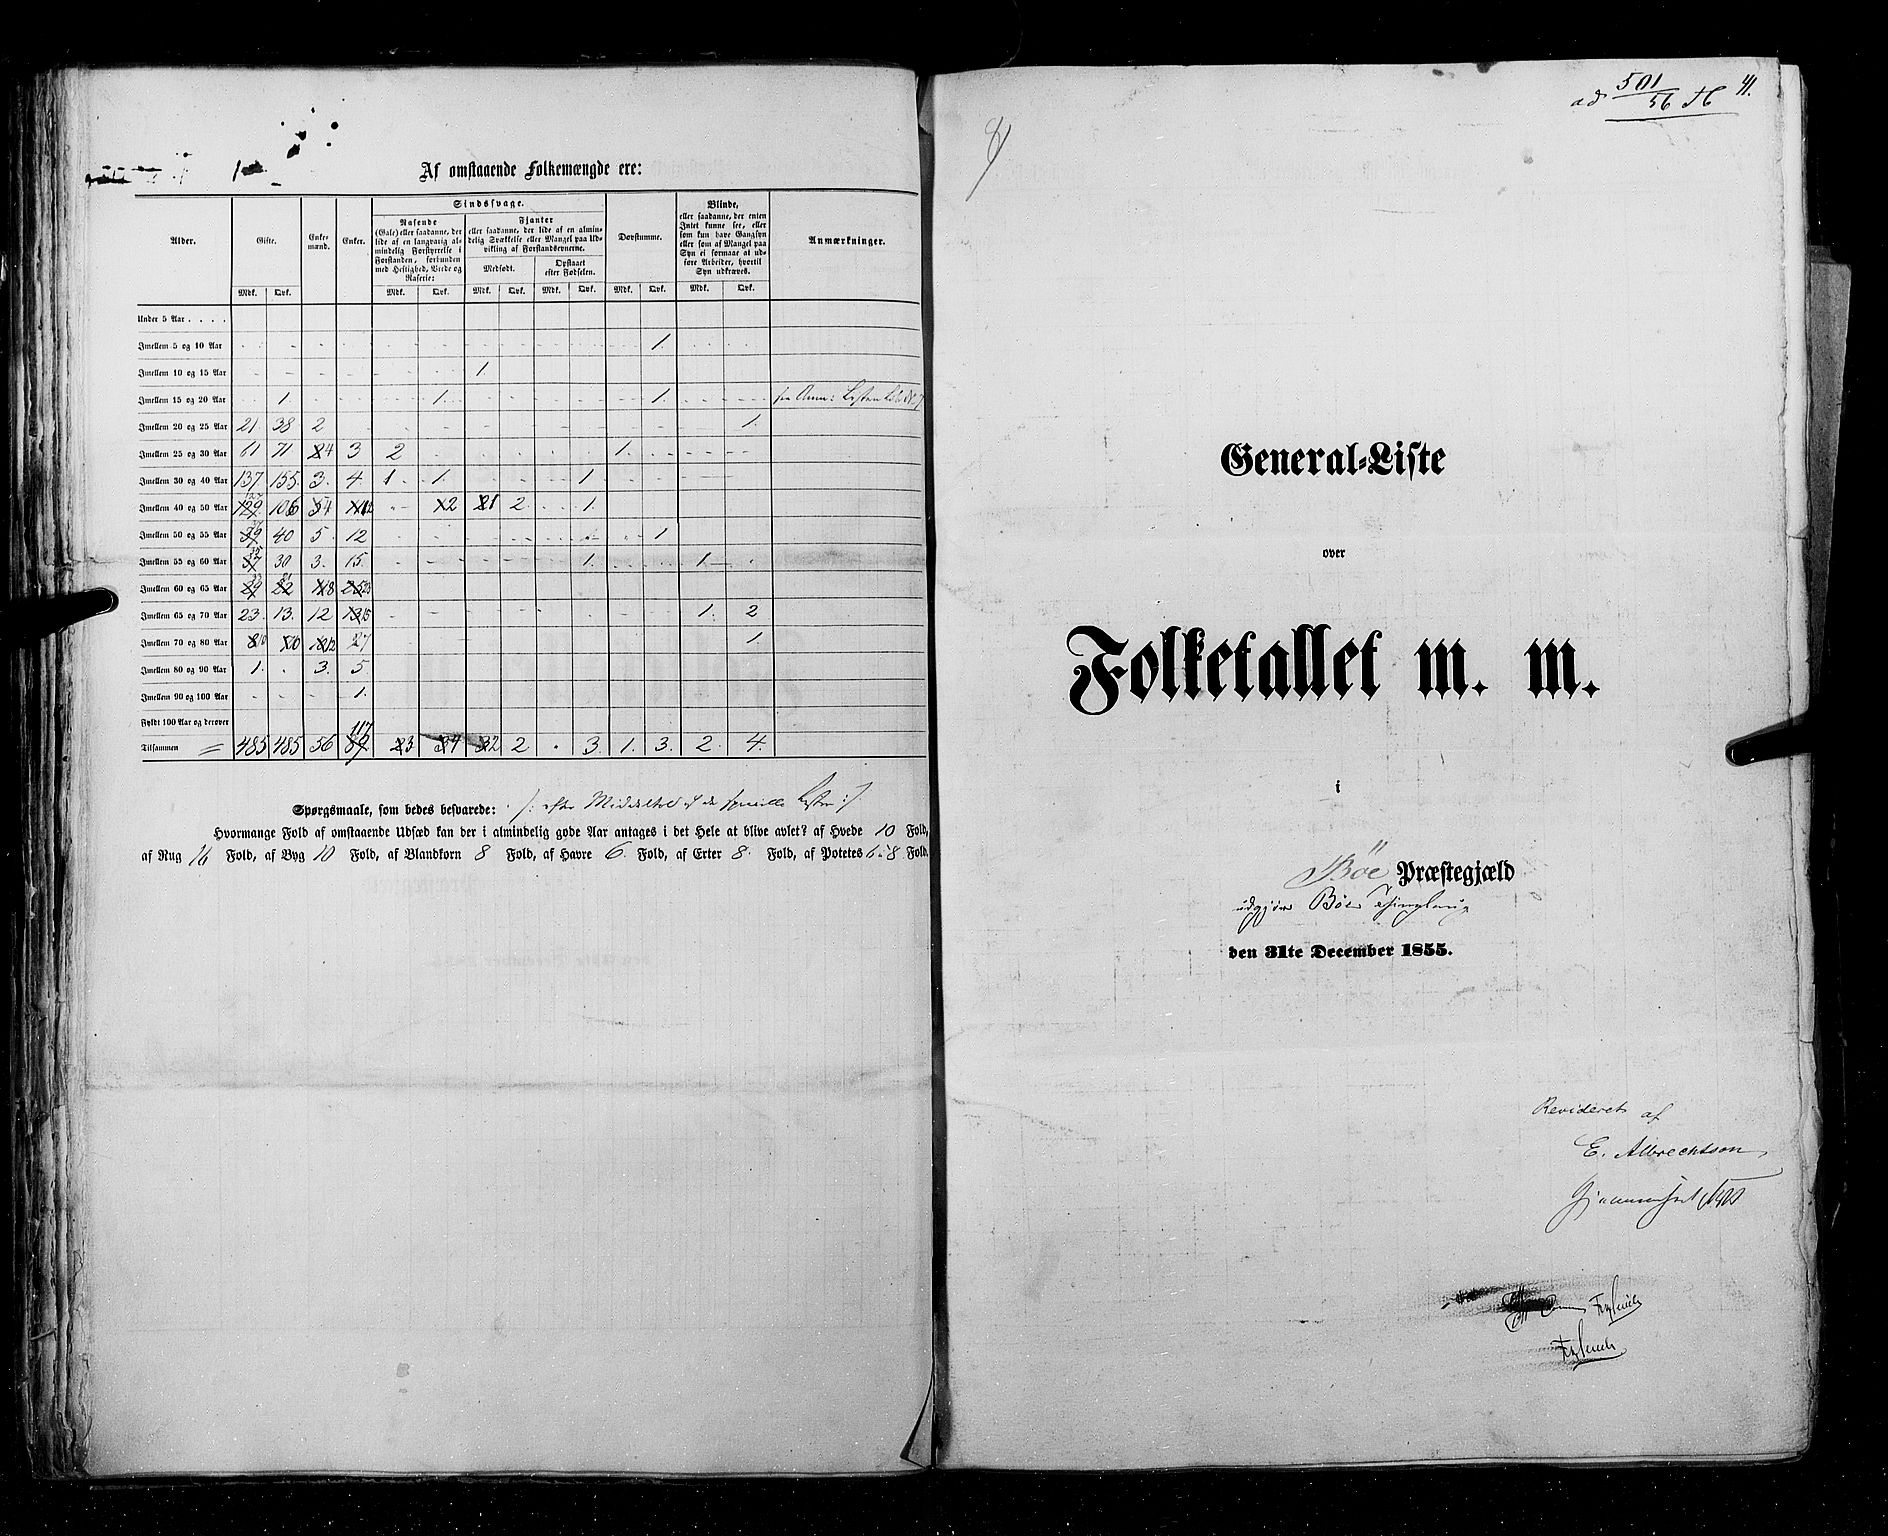 RA, Census 1855, vol. 3: Bratsberg amt, Nedenes amt og Lister og Mandal amt, 1855, p. 41